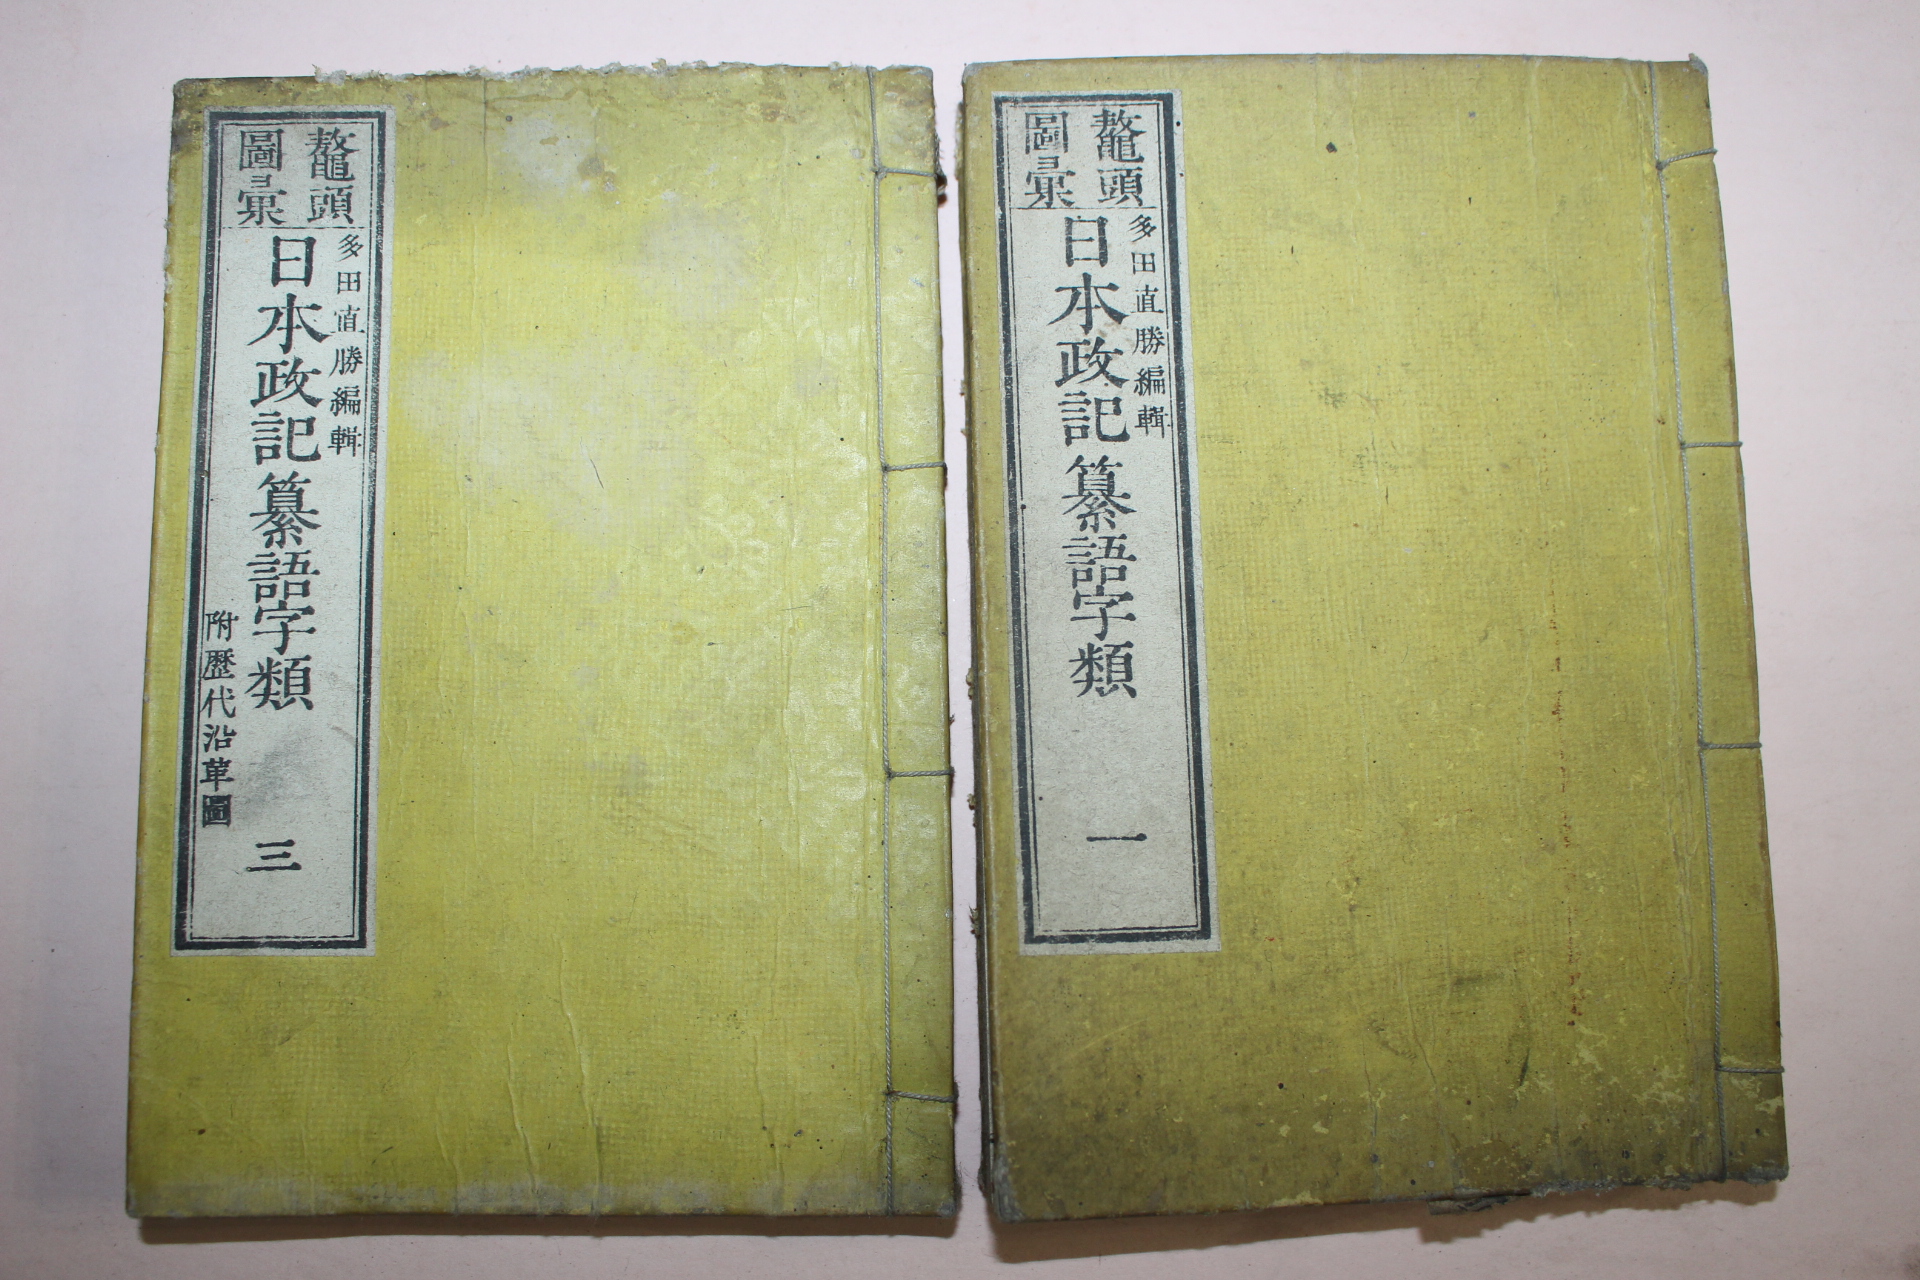 1885년(명치18년) 일본간행 일본정기찬어자류(日本政記纂語字類) 2책